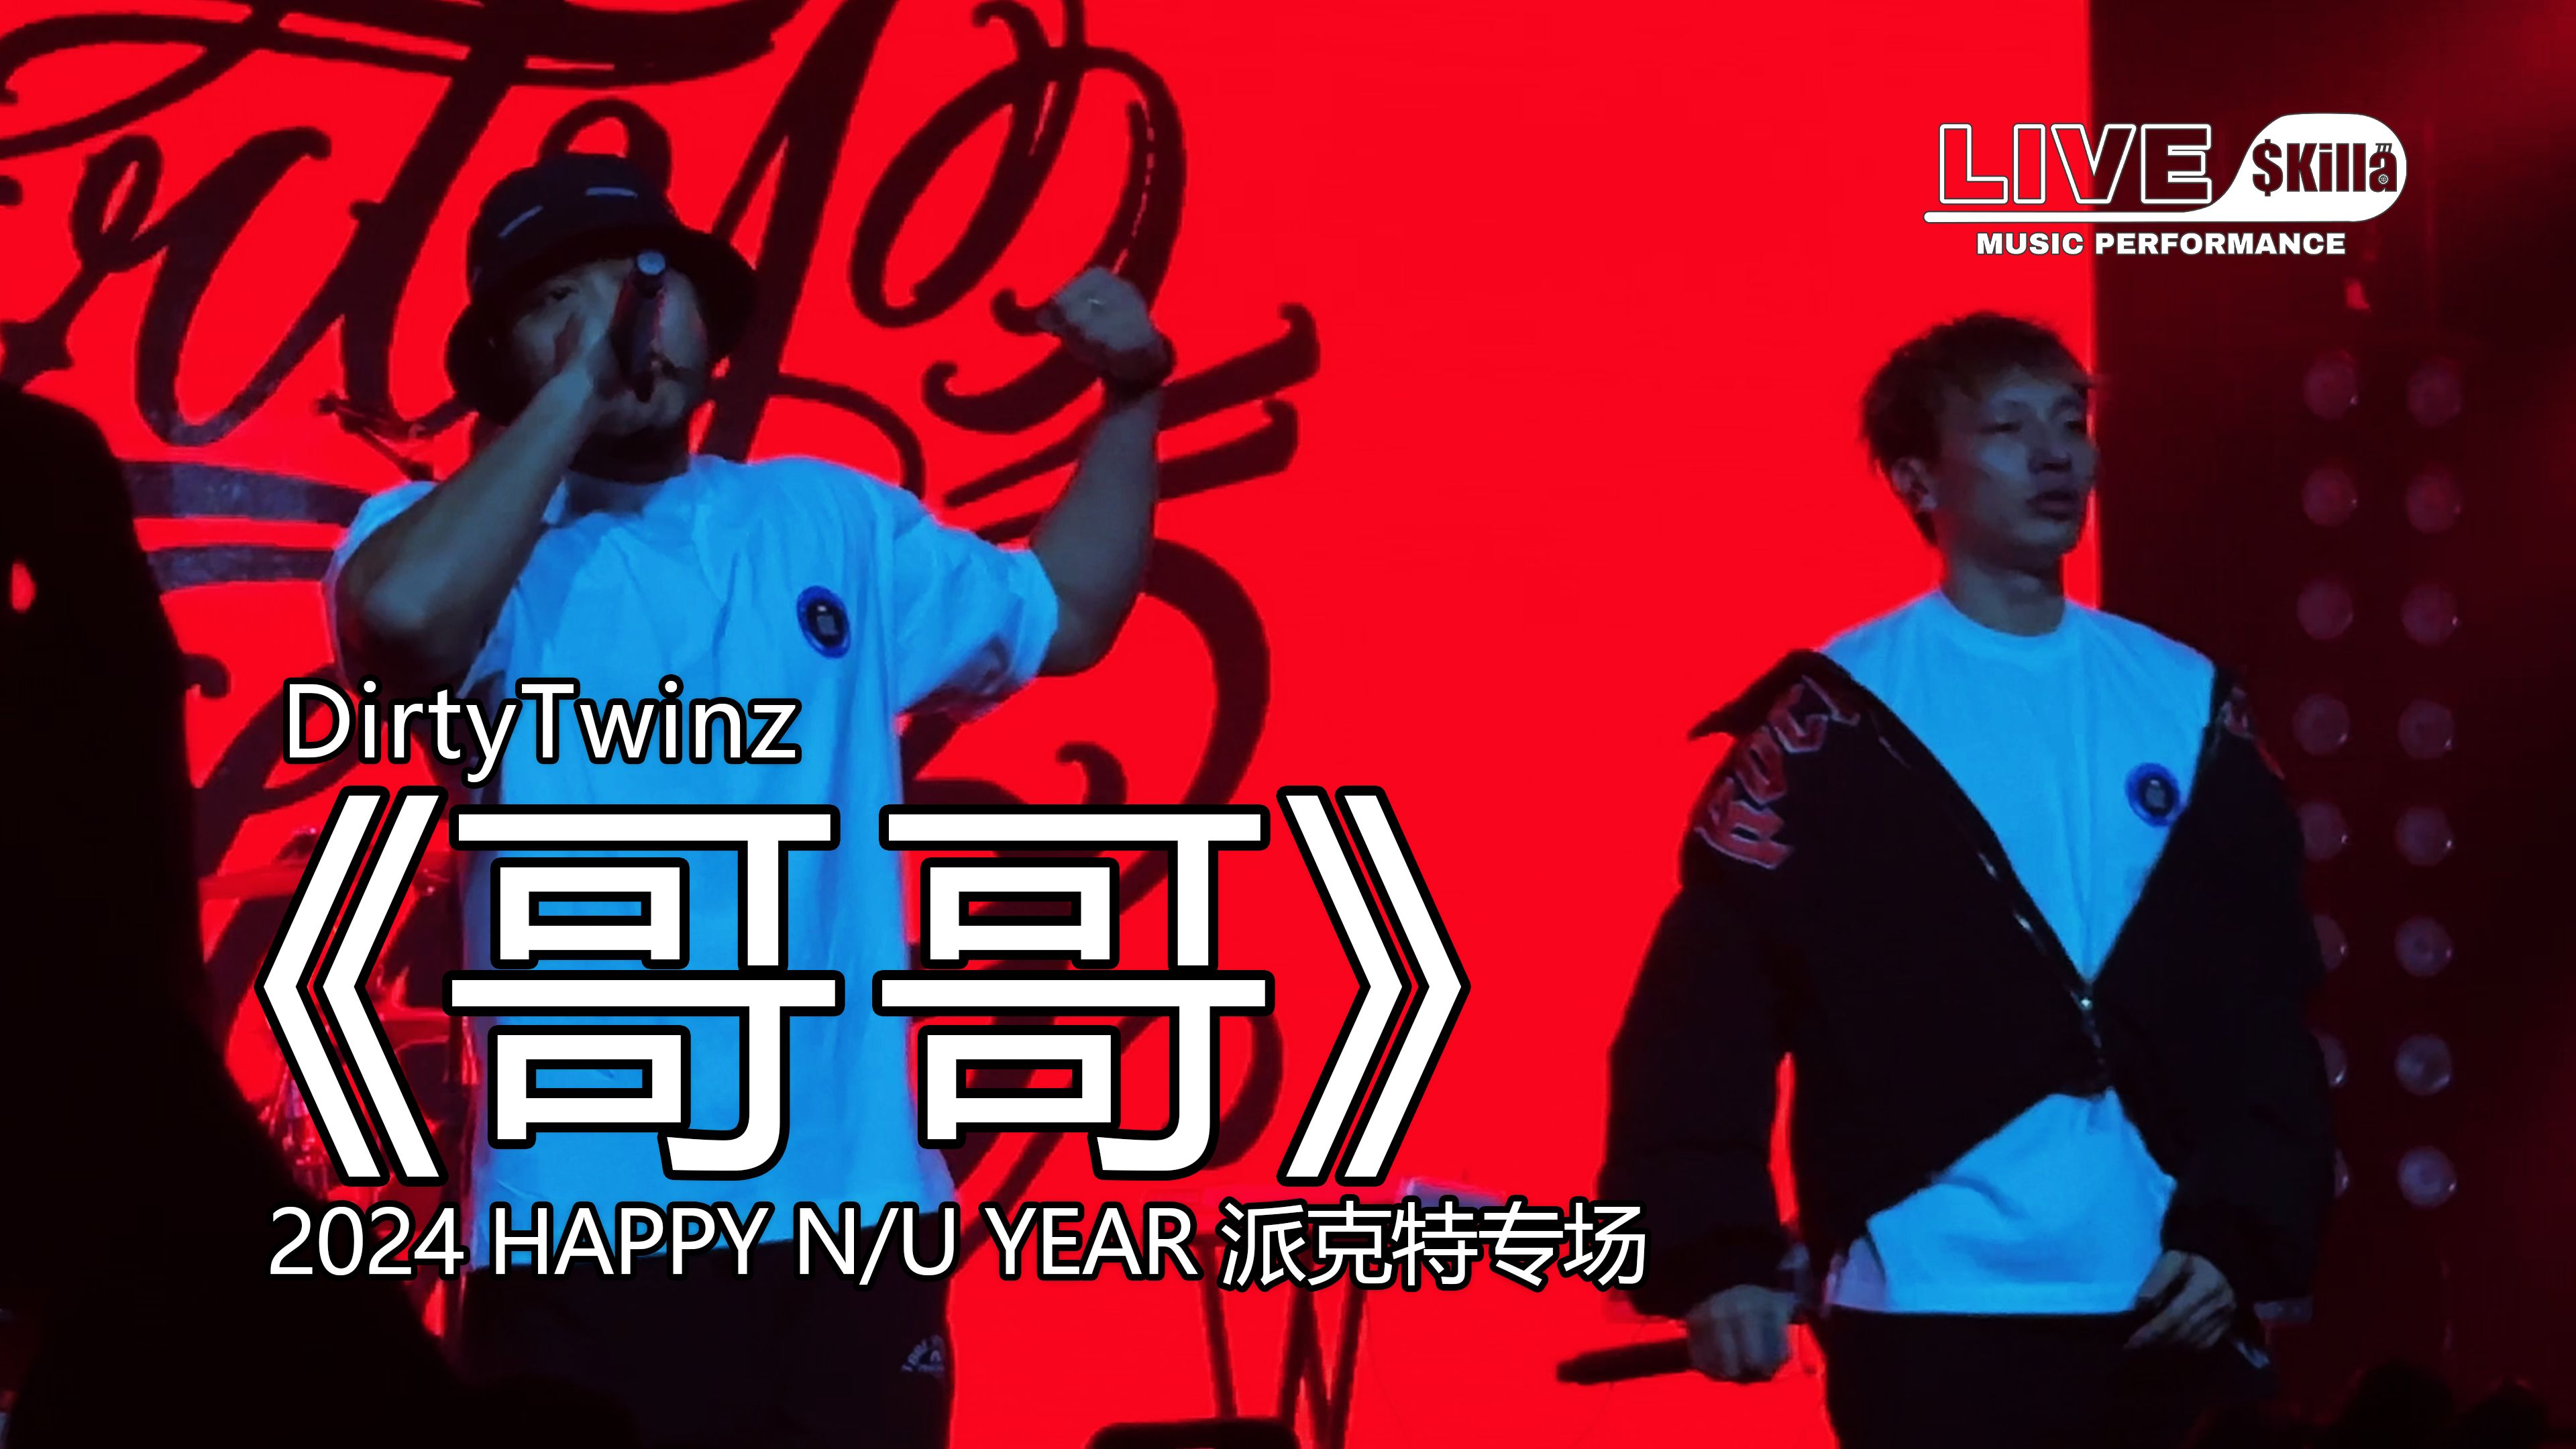 【DirtyTwinz】《哥哥》『2024 HAPPY N/U YEAR 派克特专场』演出现场｜LIVE